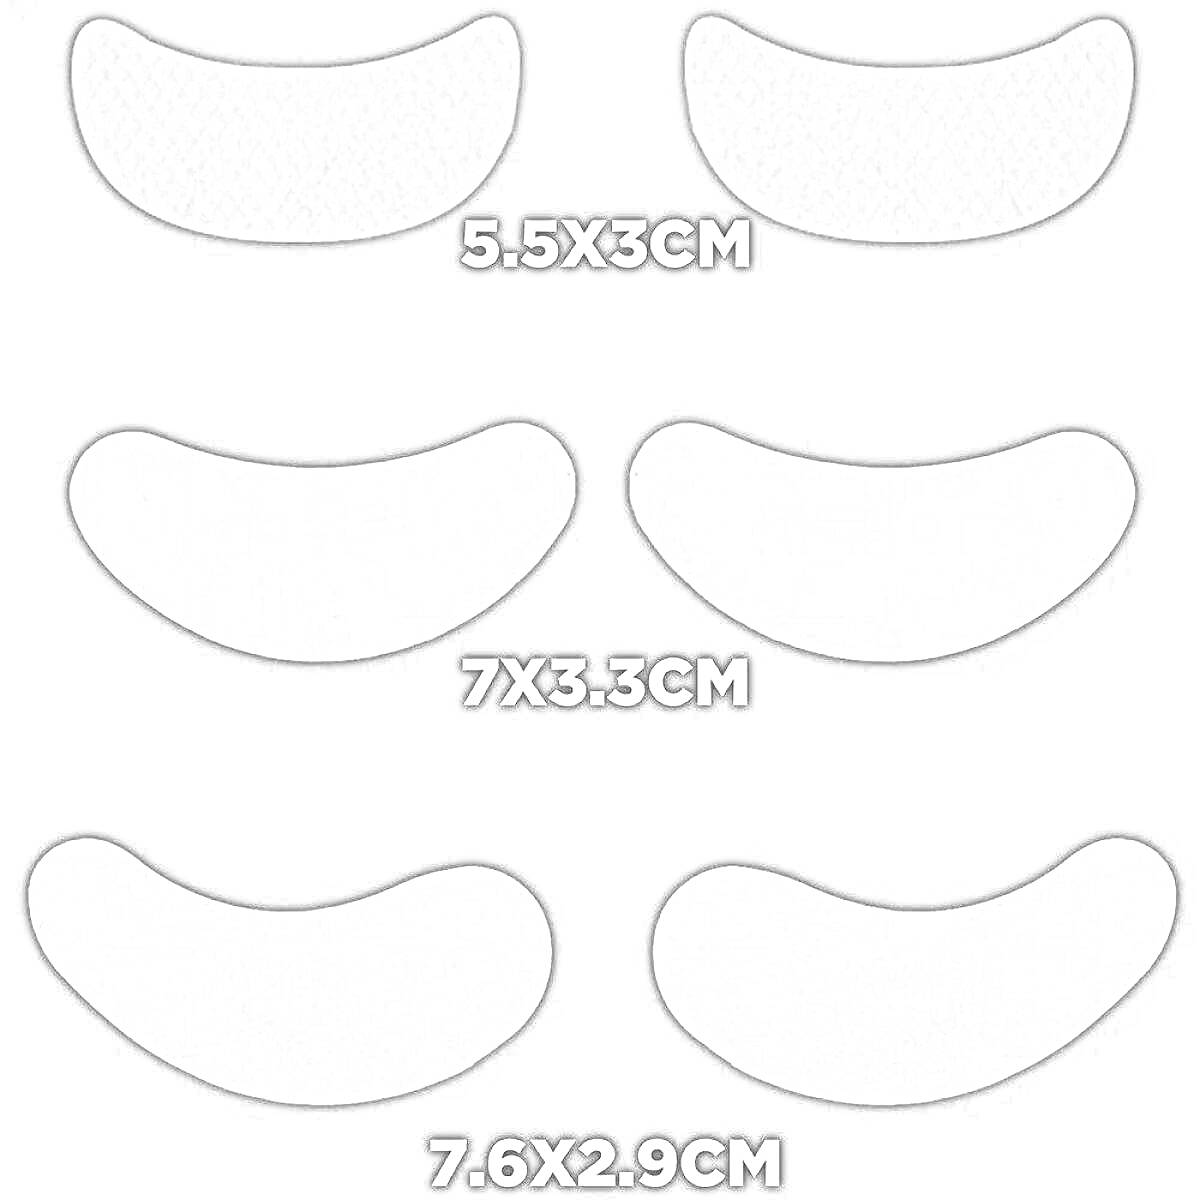 Три размера патчей для глаз (5.5x3 см, 7x3.3 см, 7.6x2.9 см)